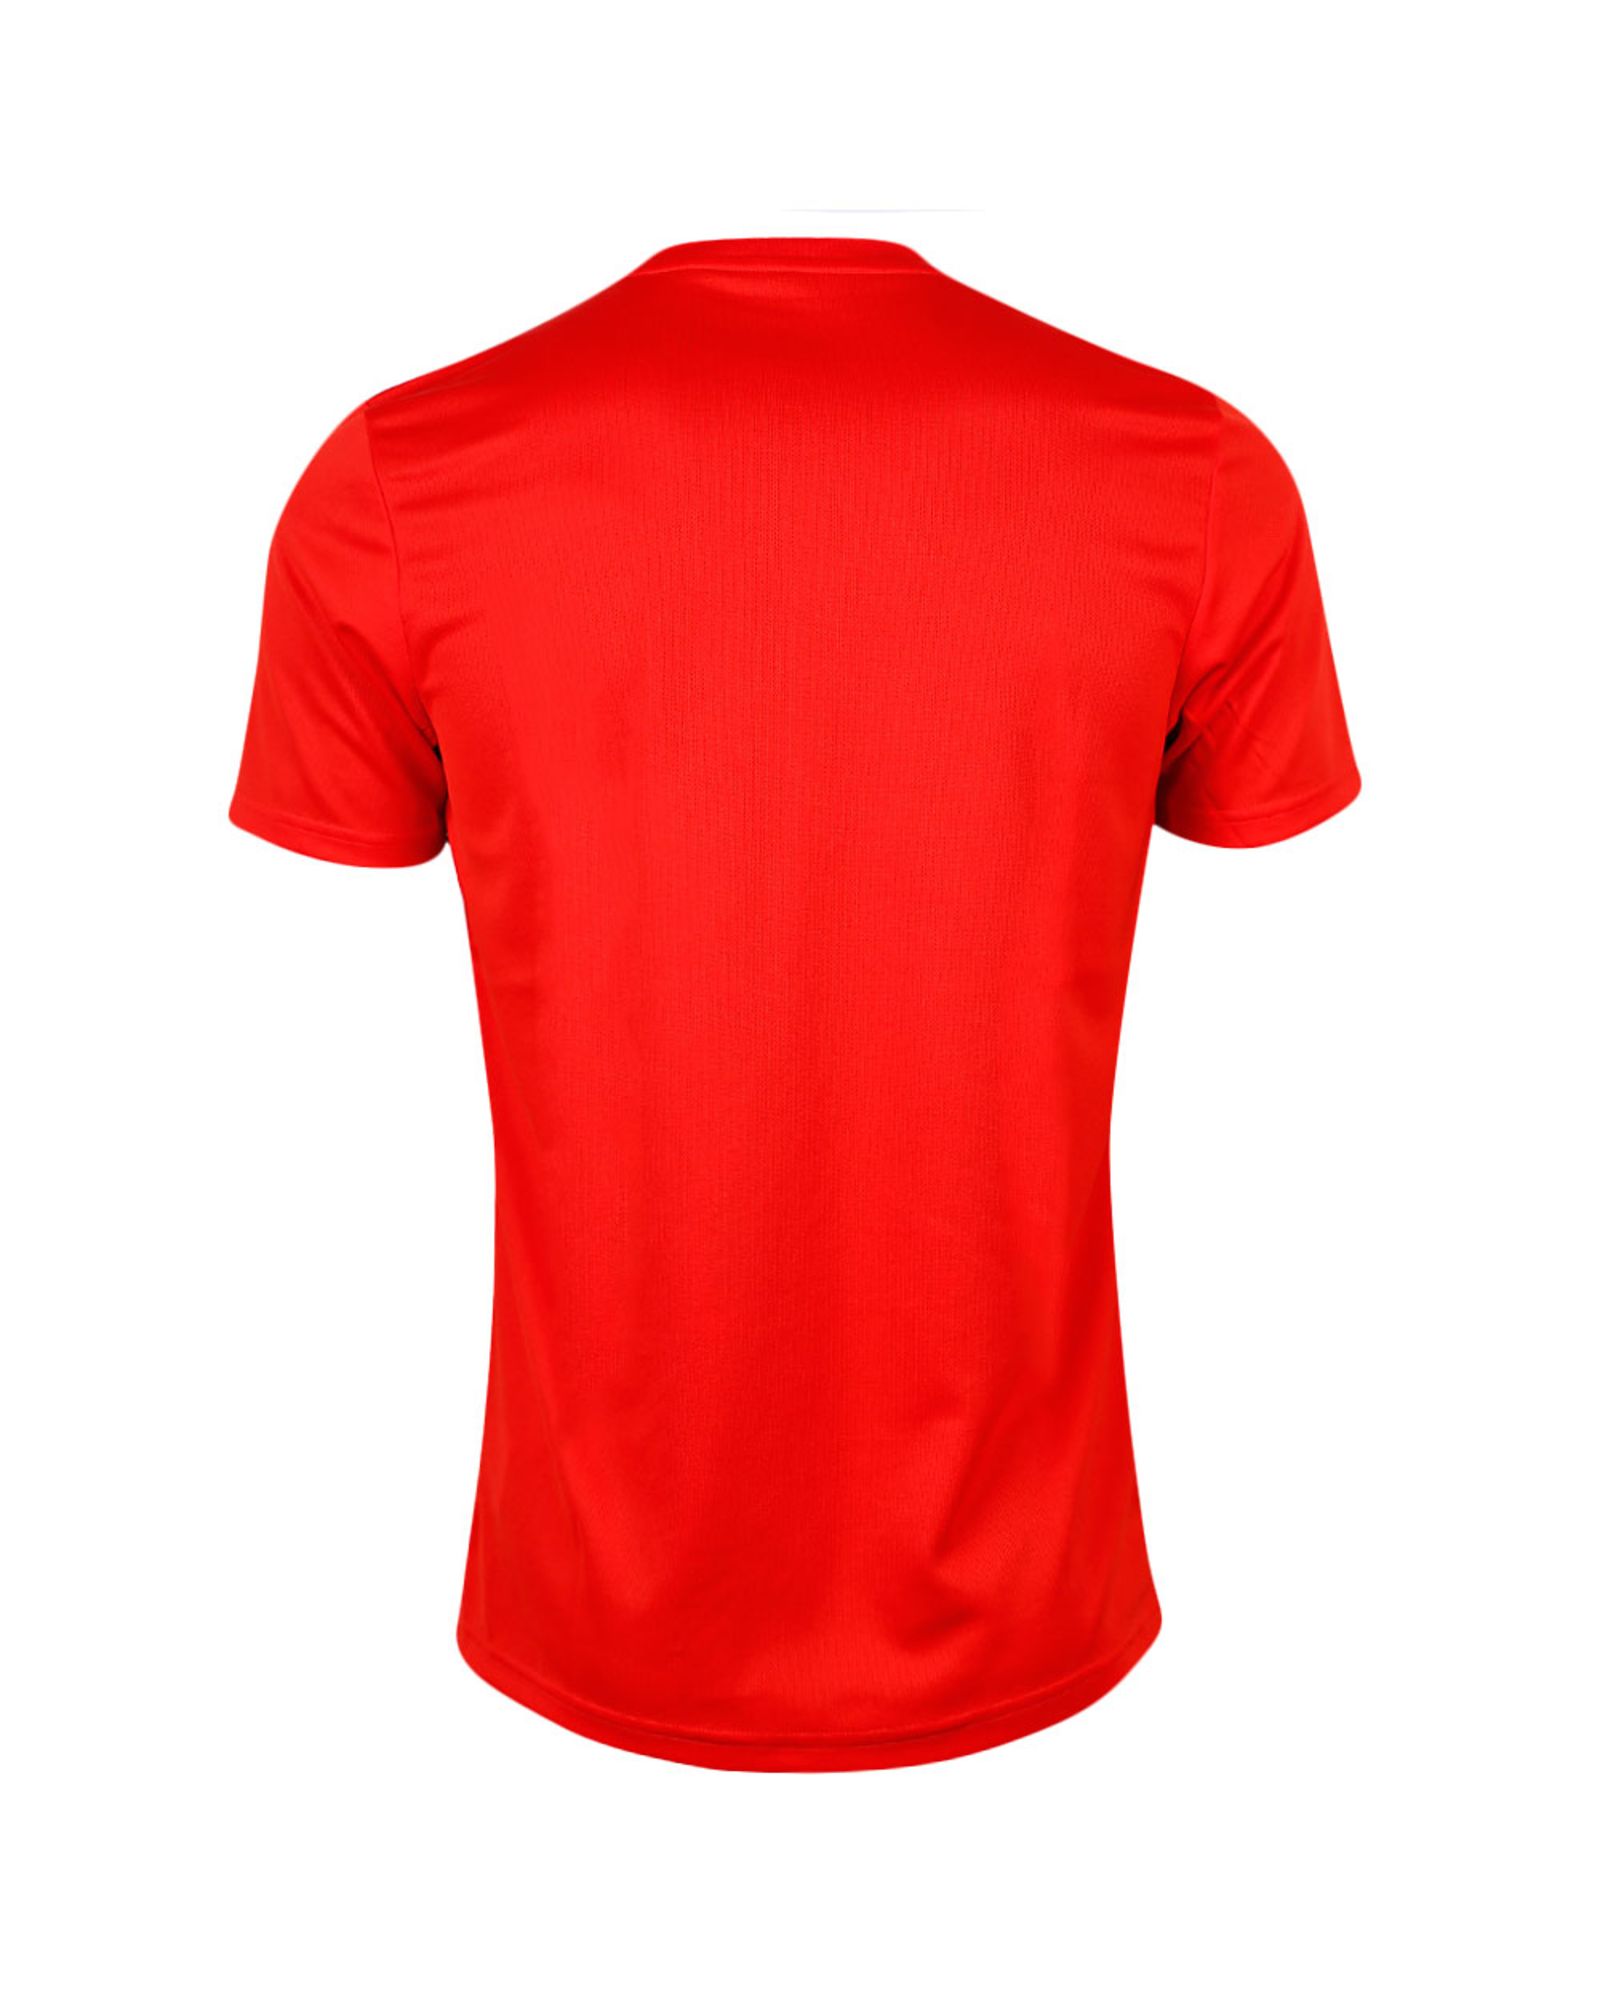 Camiseta 1ª España Mundial 2018 Rojo - Fútbol Factory